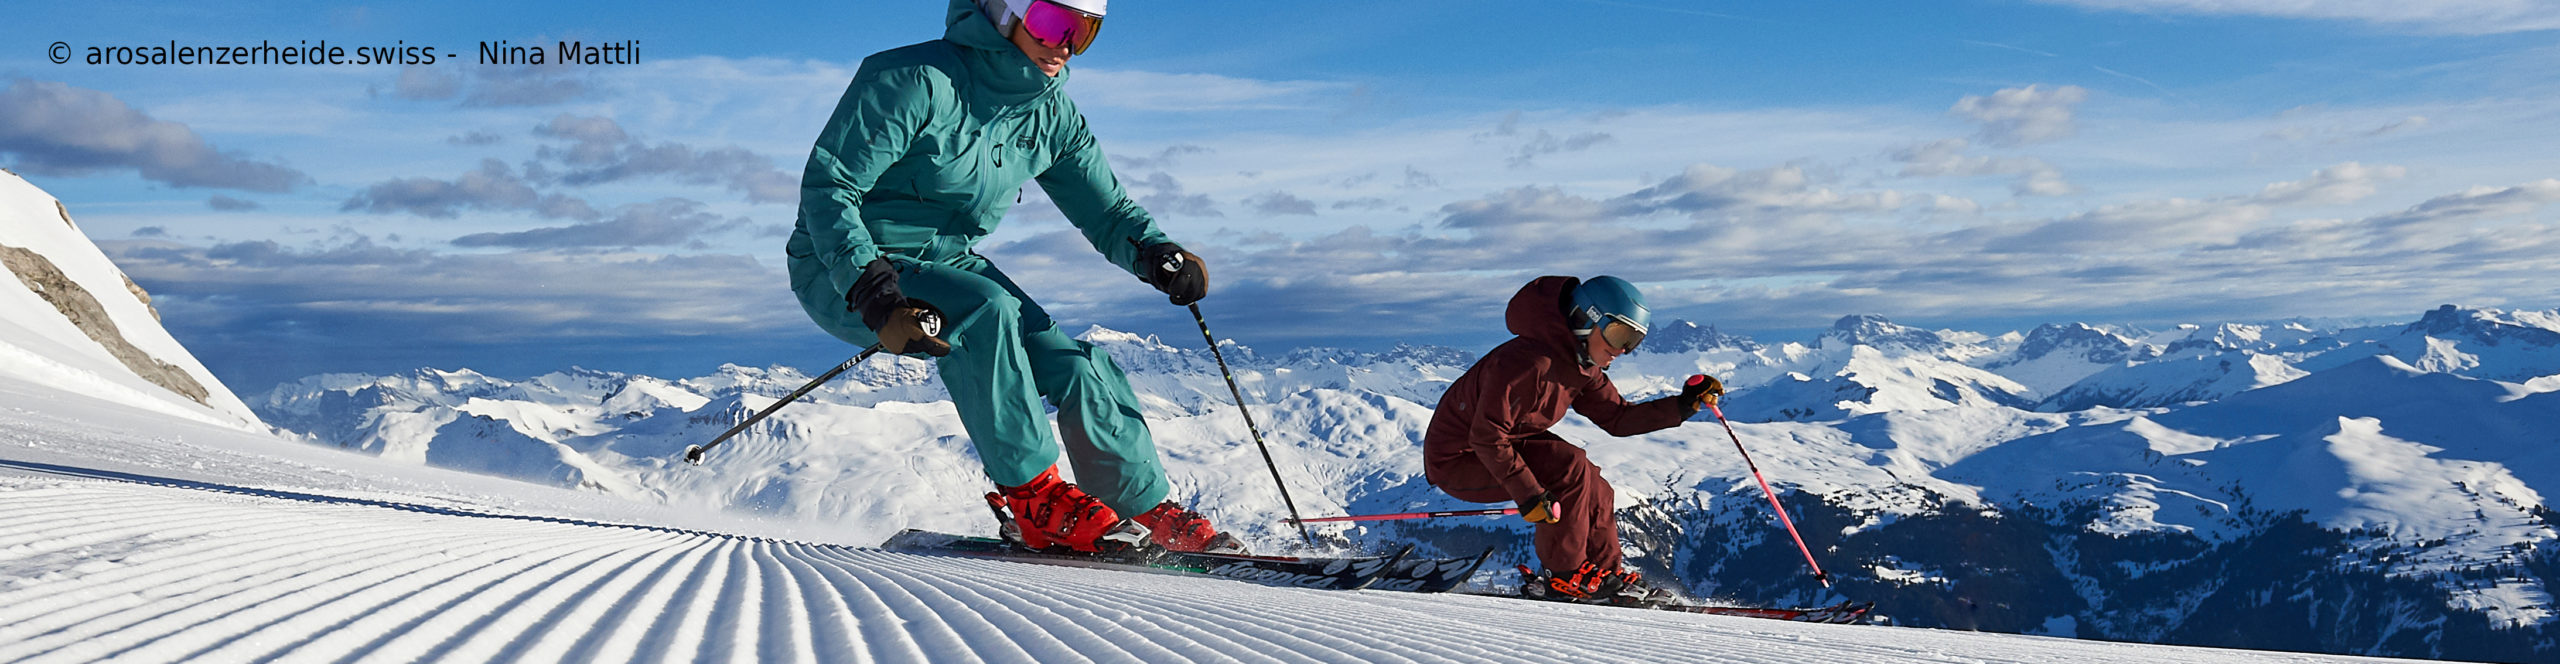 AROSA – LENZERHEIDE – SCHWEIZ – Weltcuport zum Sparpreis – 3 Skitage 2 Übernachtungen inkl. Skipass – ab Samstag 